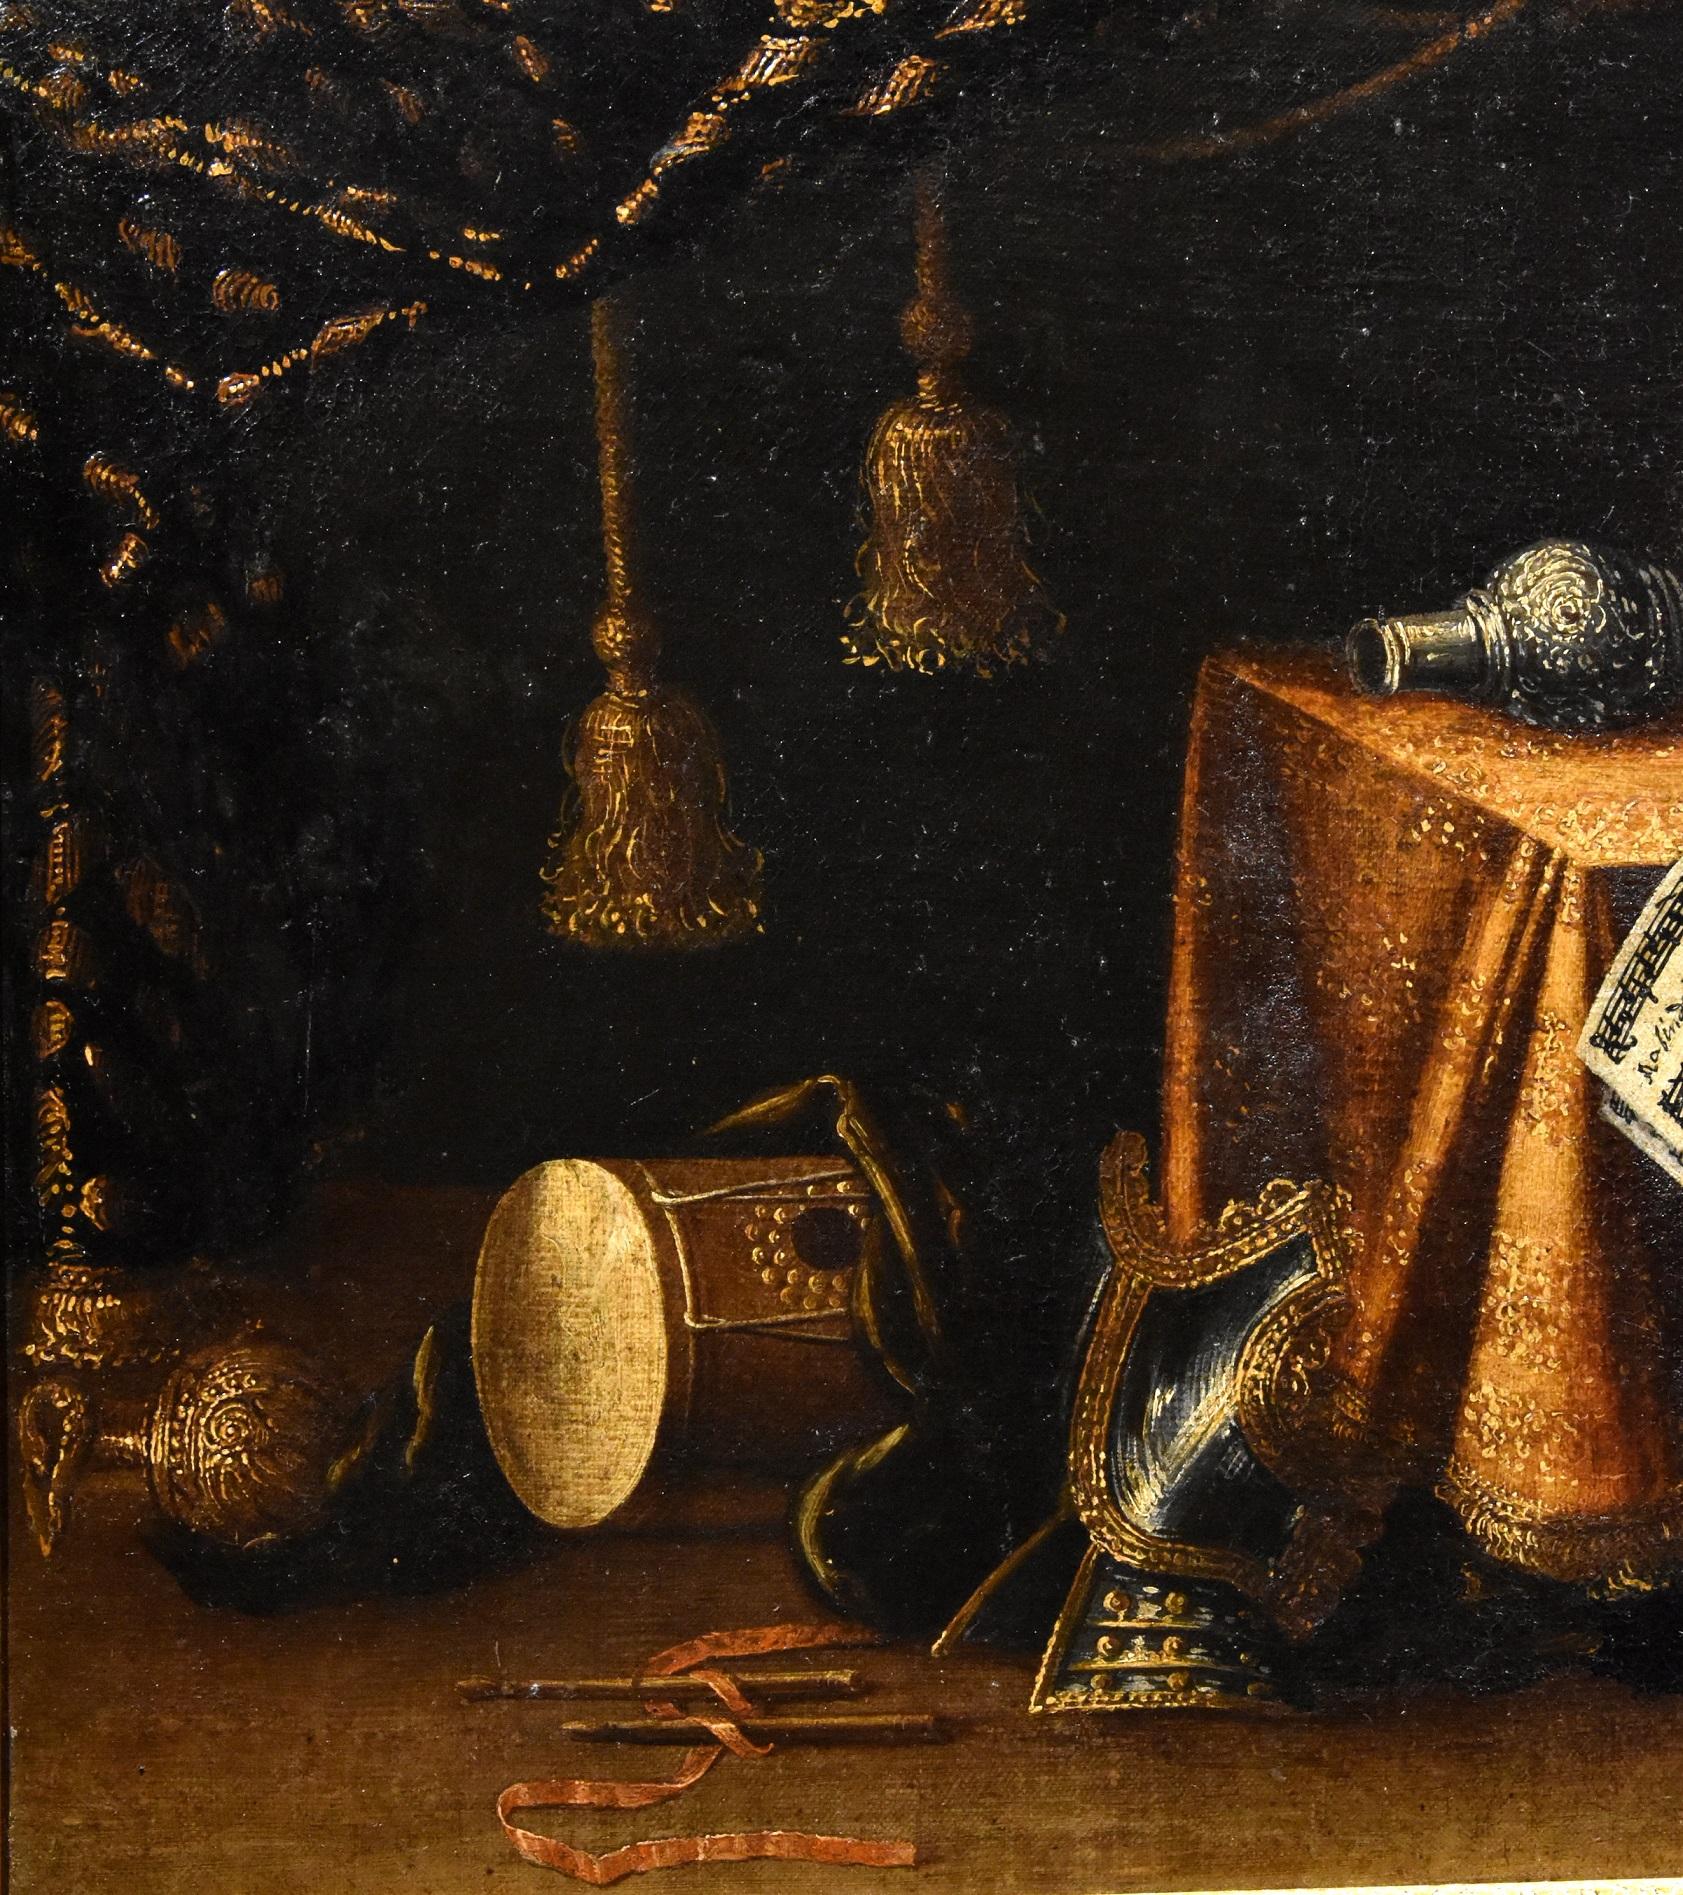 Francesco Noletti, genannt der Malteser (Malta 1611-Rom 1654) Werkstatt/Zirkel der
Stilleben mit Musikinstrumenten, Spielzeug, Rüstungen, Textilien und kostbaren Gegenständen

Öl auf Leinwand (52 x 78 cm. - im Rahmen 71 x 102)

Dieses Gemälde von